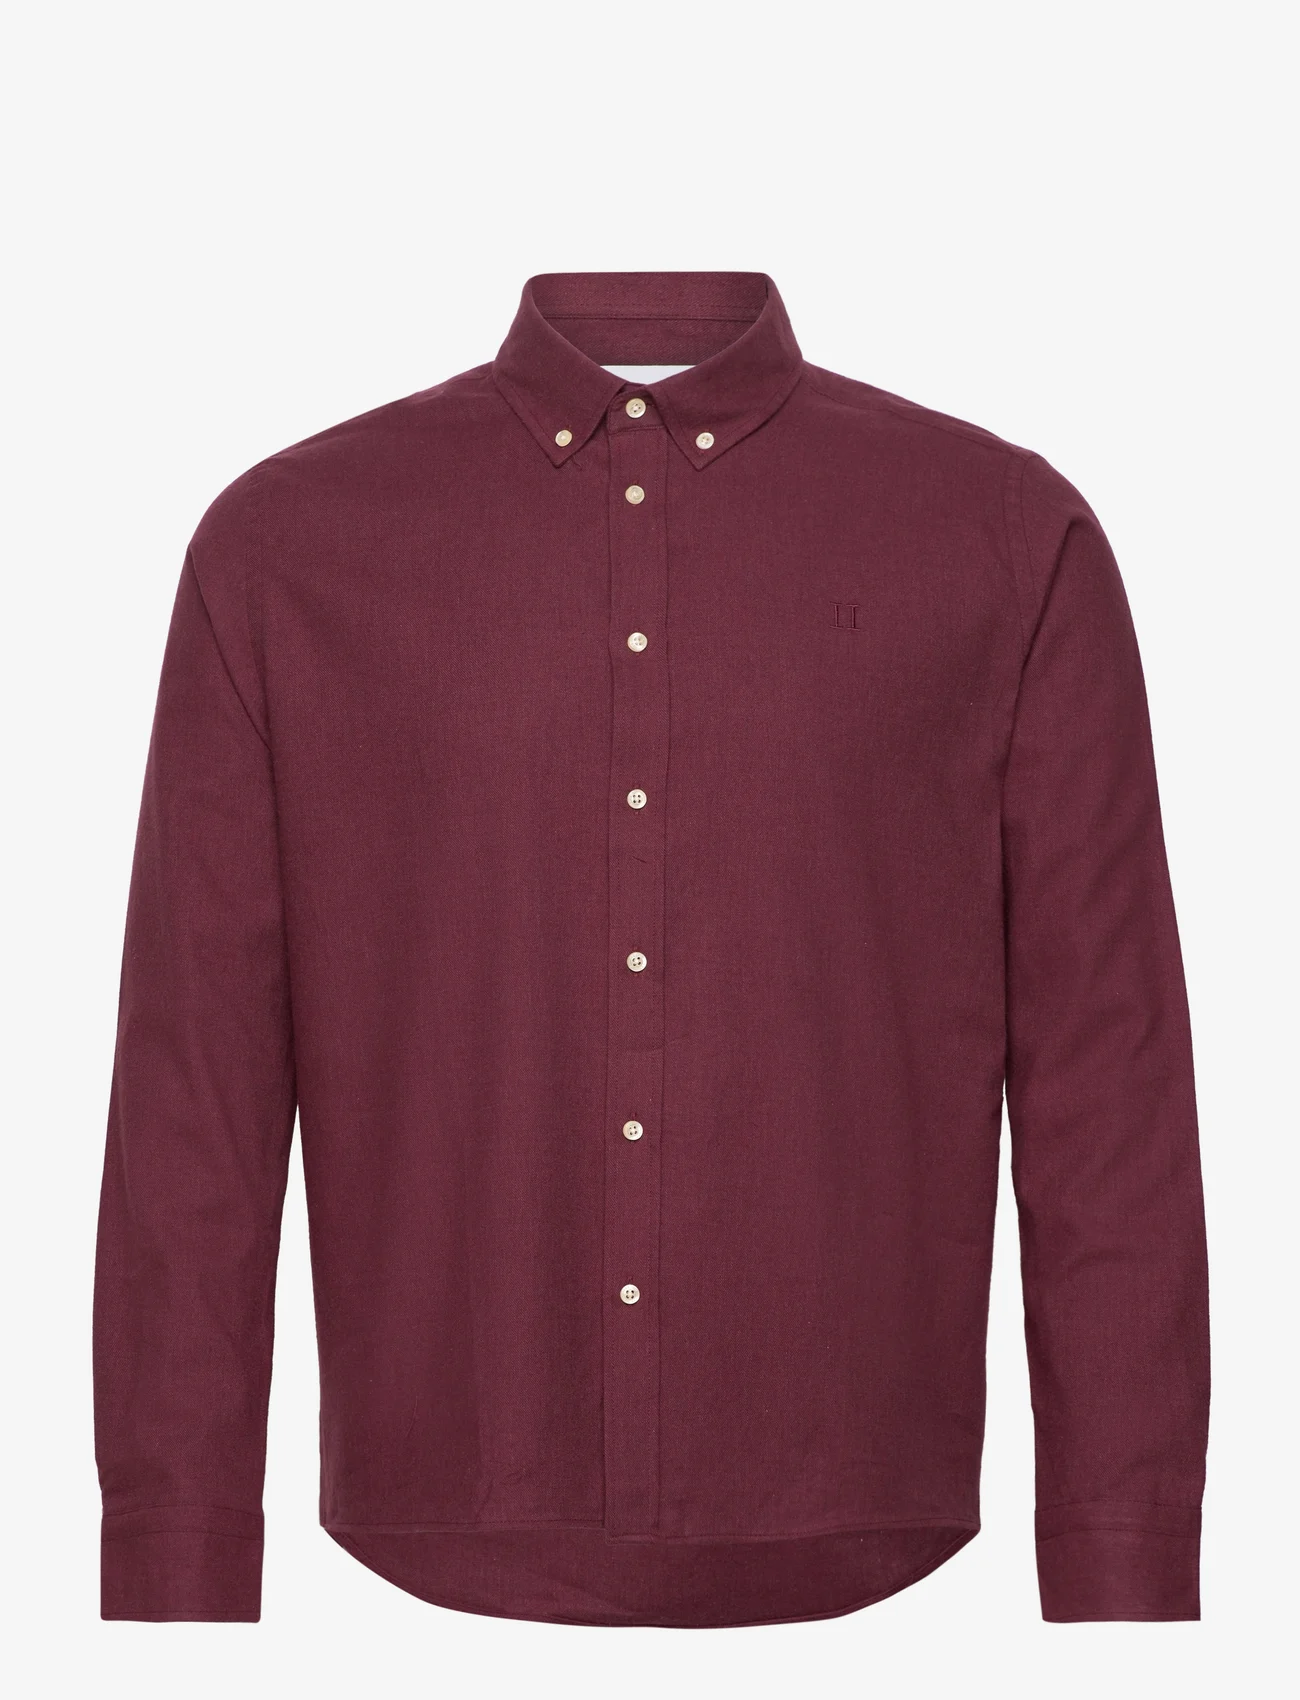 Les Deux - Desert Reg Shirt - basic shirts - sassafras melange - 0